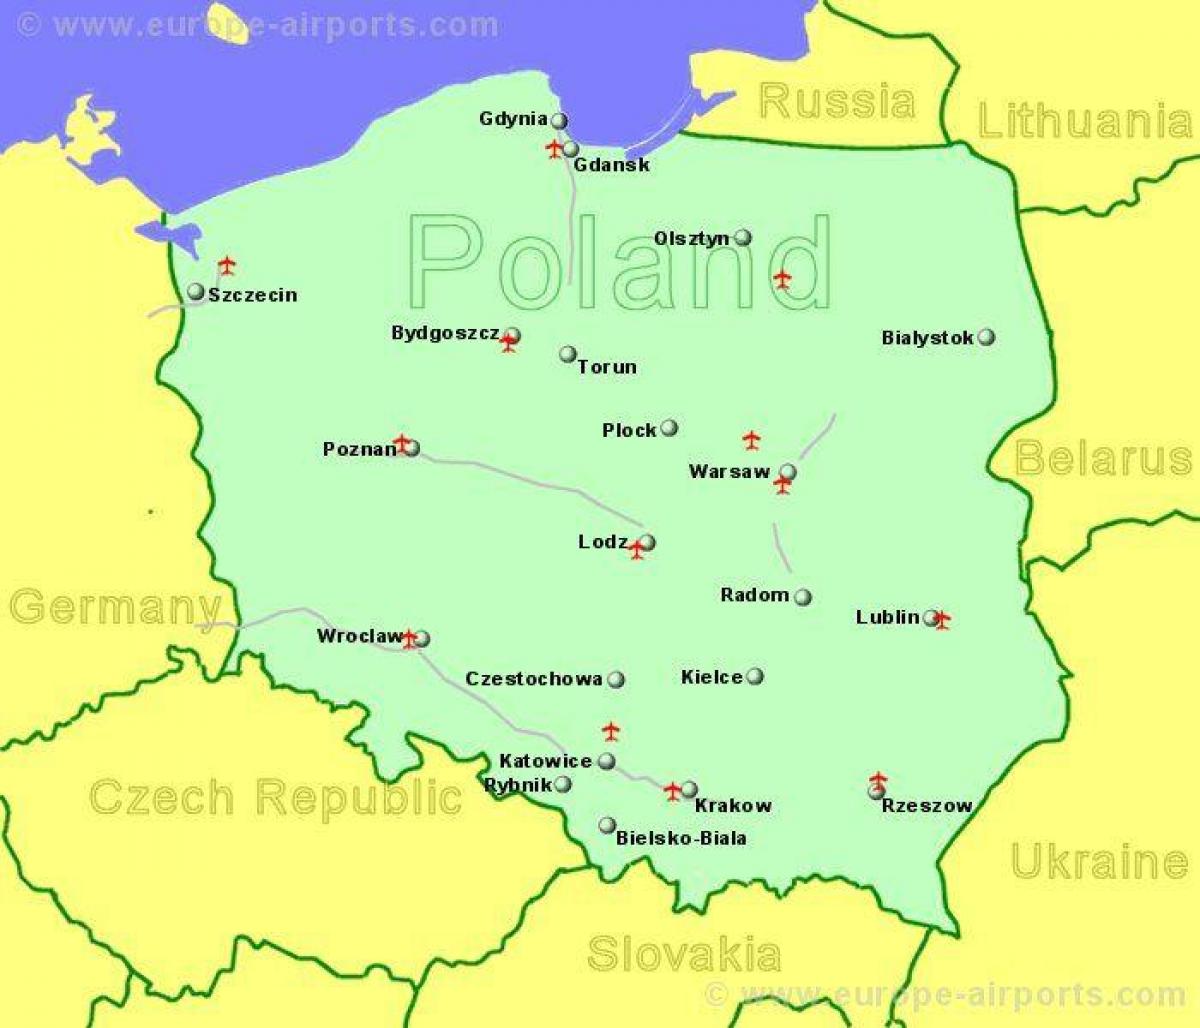 mapa de Polonia, mostrando los aeropuertos